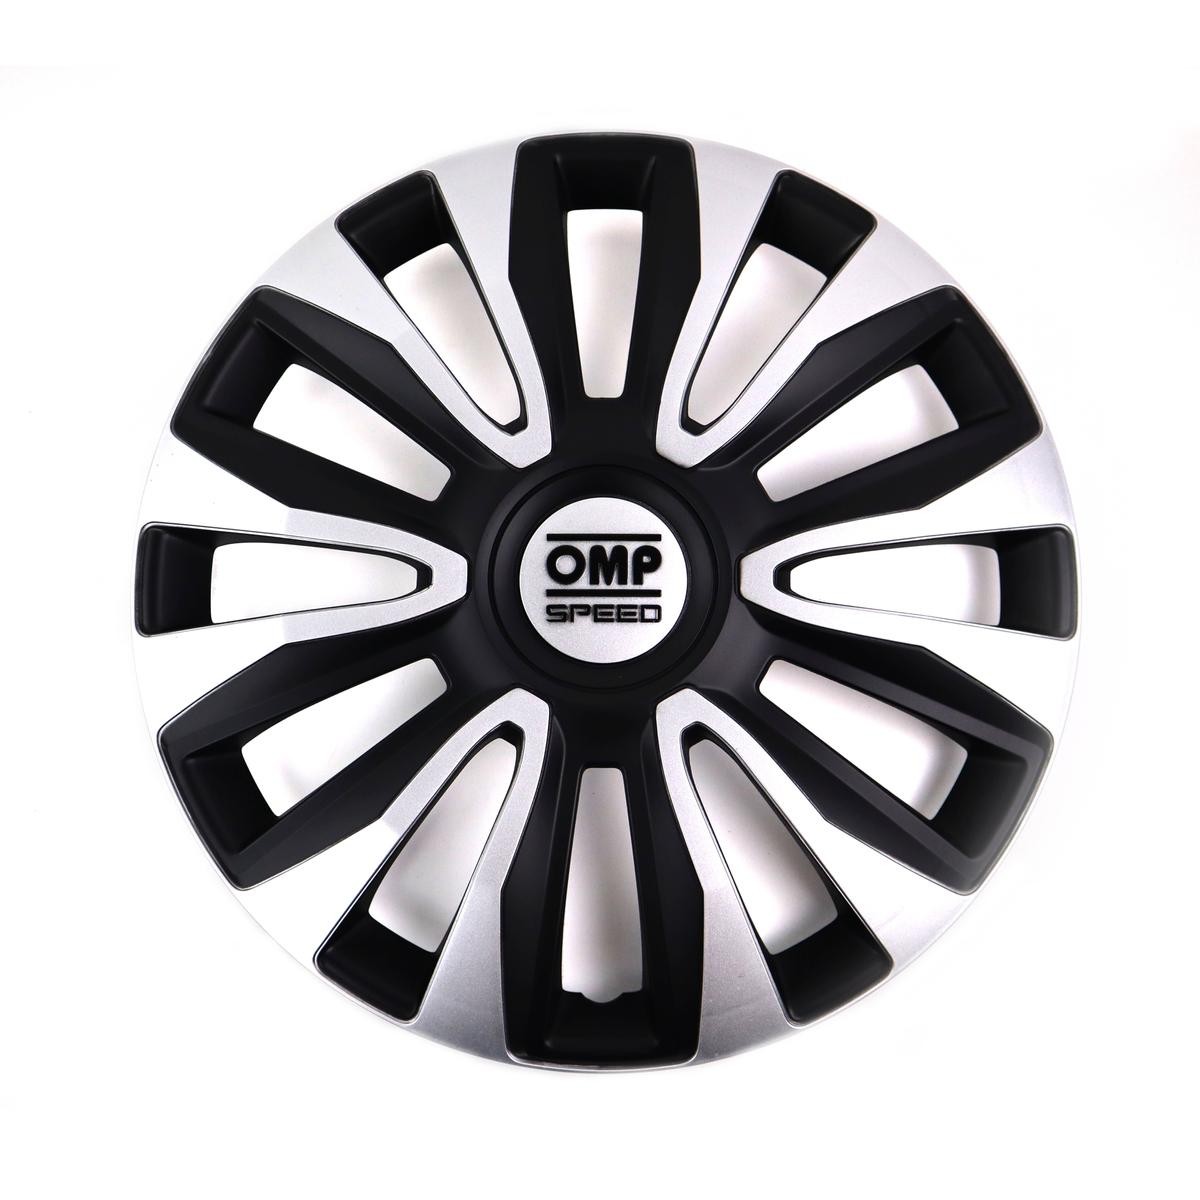 OMP OMPS07011412 Car wheel trims VW POLO (9N_) 14 Inch black, silver